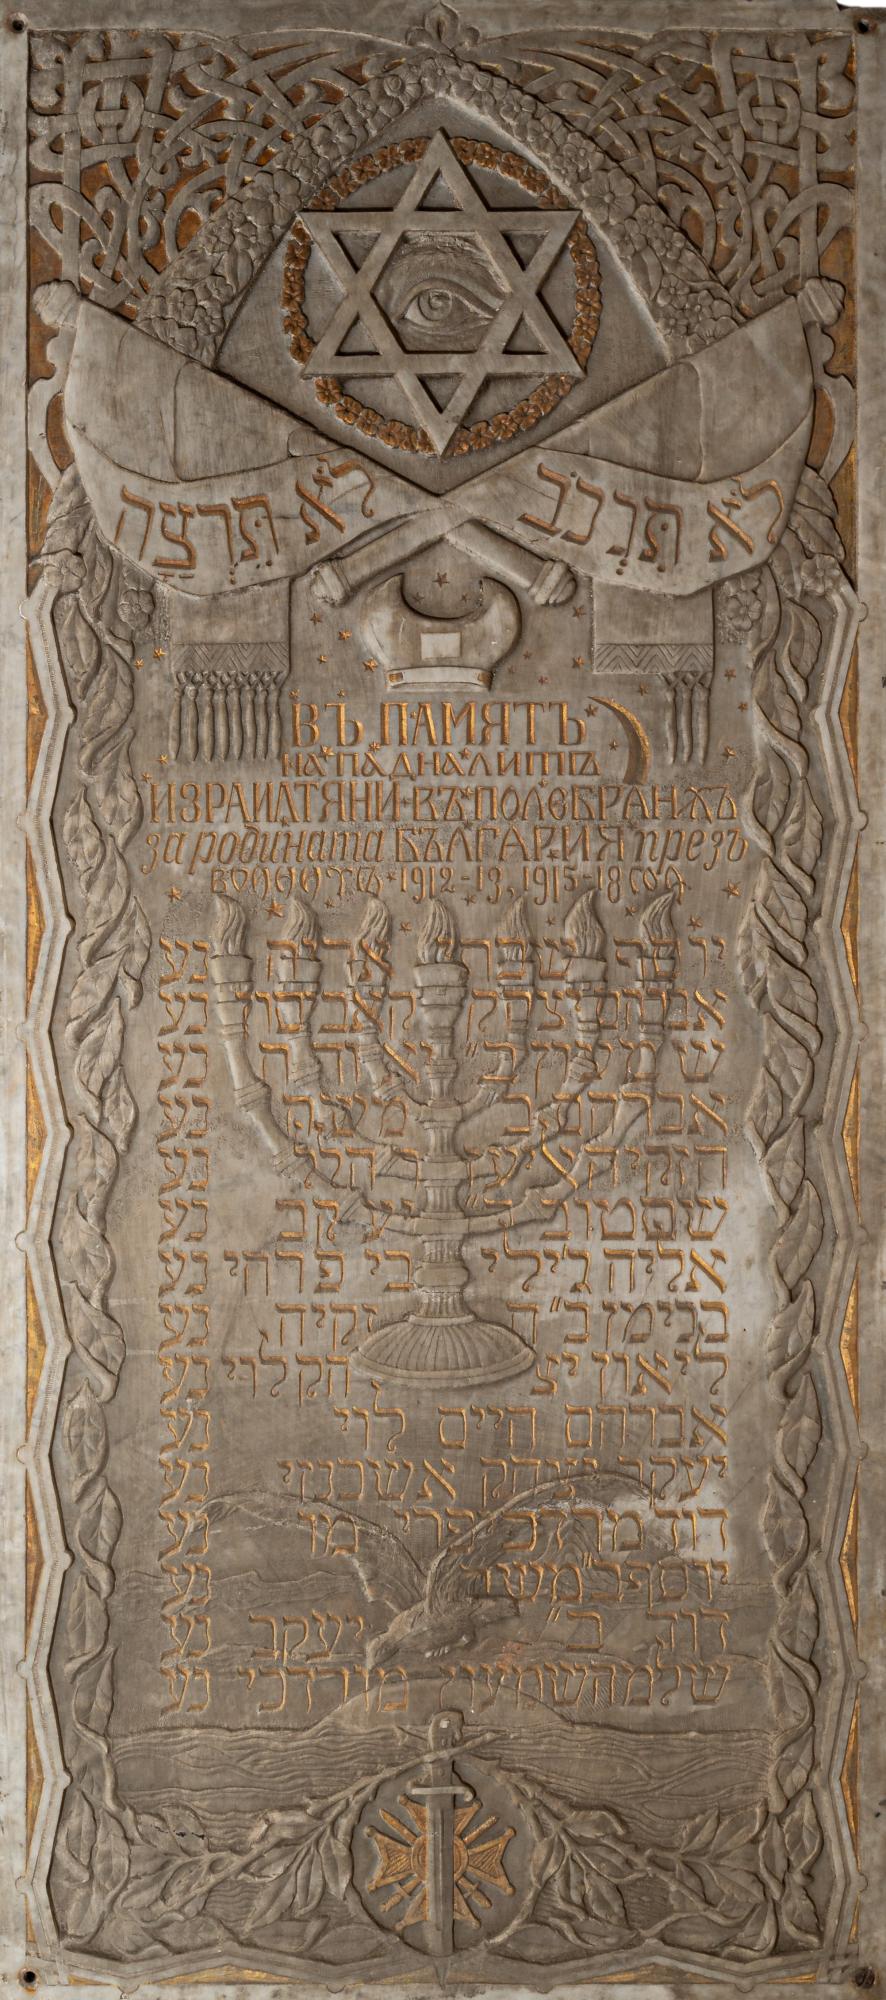 Възпоменателни плочи на загиналите евреи видинчани през войните 1912-1913 и 1915-1918 г.